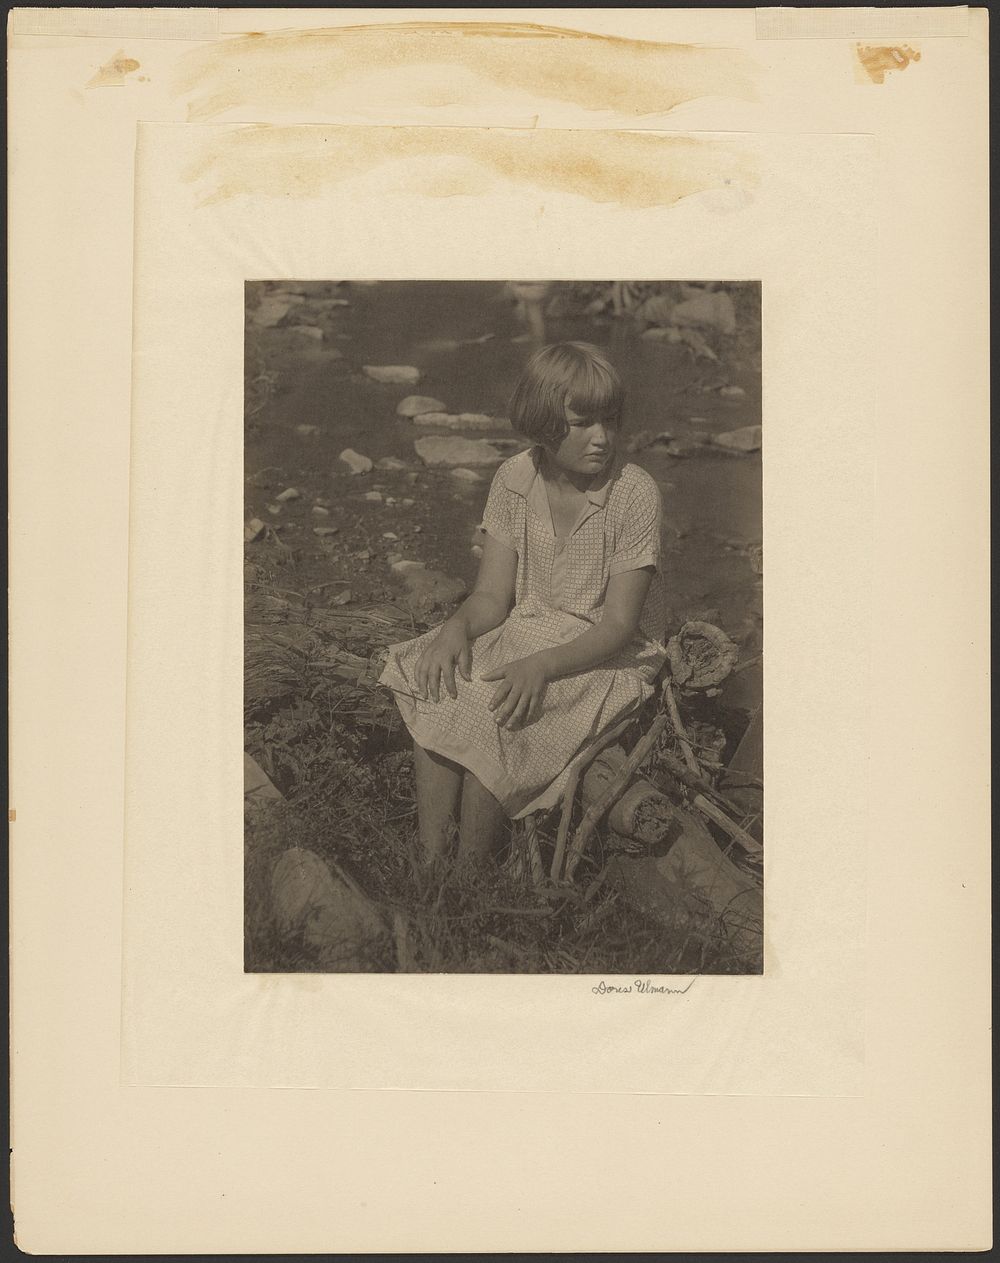 Girl Sitting on Log by Creek by Doris Ulmann